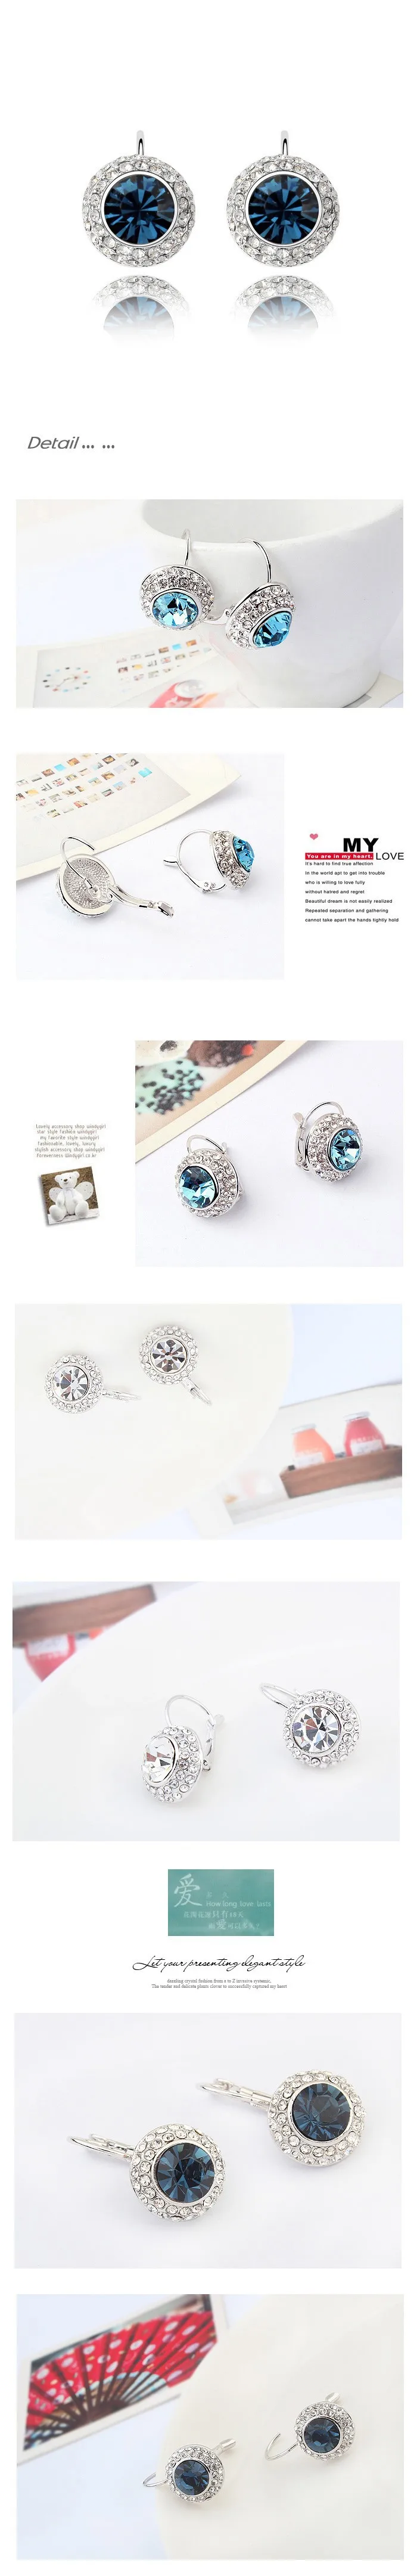 MS Betti классические серьги с круглым камнем и французским кристаллом swarovski для женщин, вечерние свадебные подарки